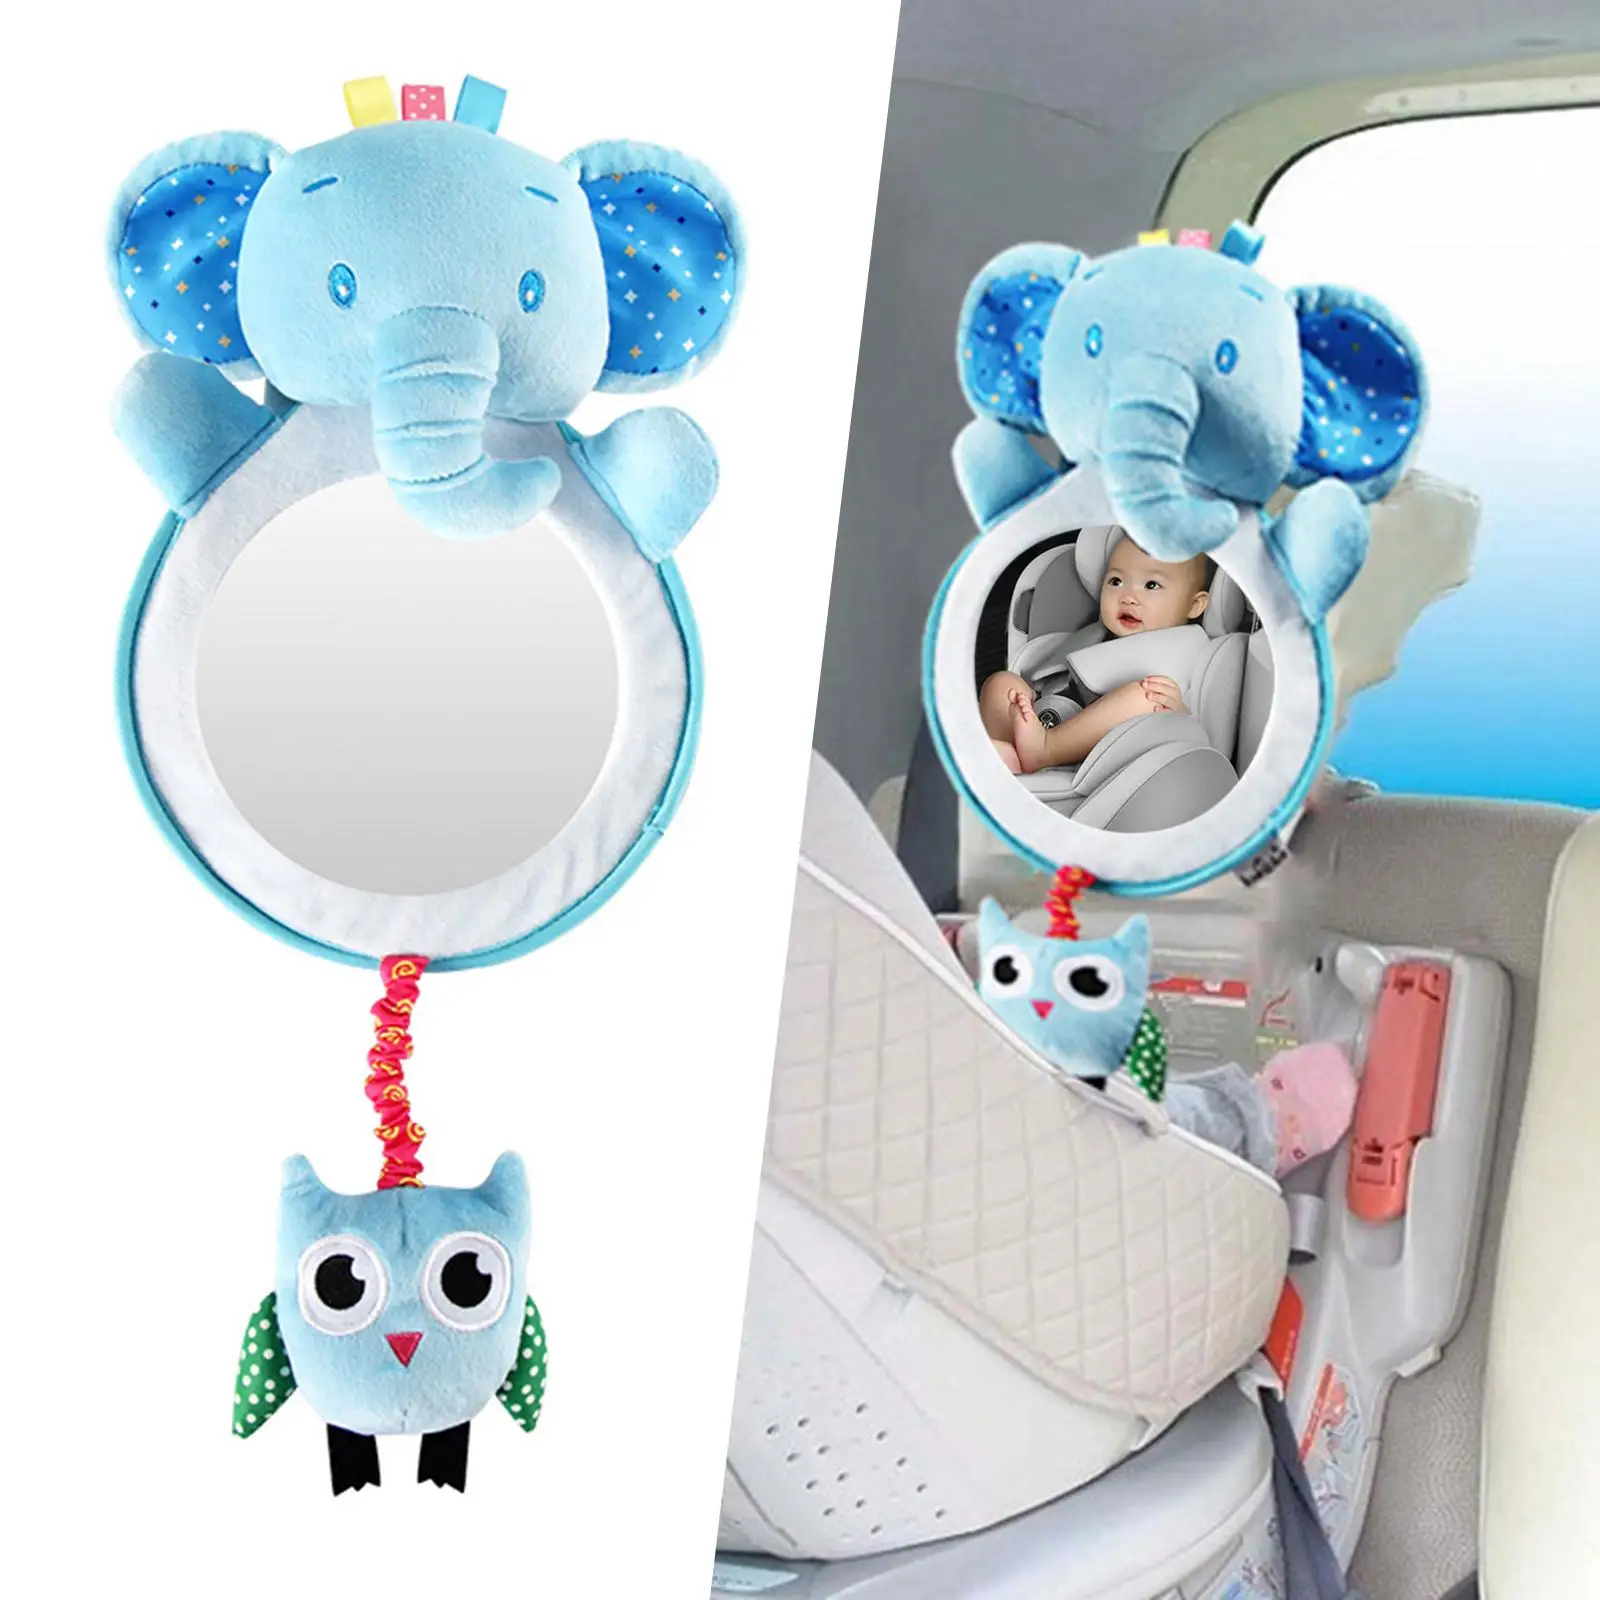 Adjustable Baby Mirror Headrest Safety Seat Rearview Mirror for Kids Children